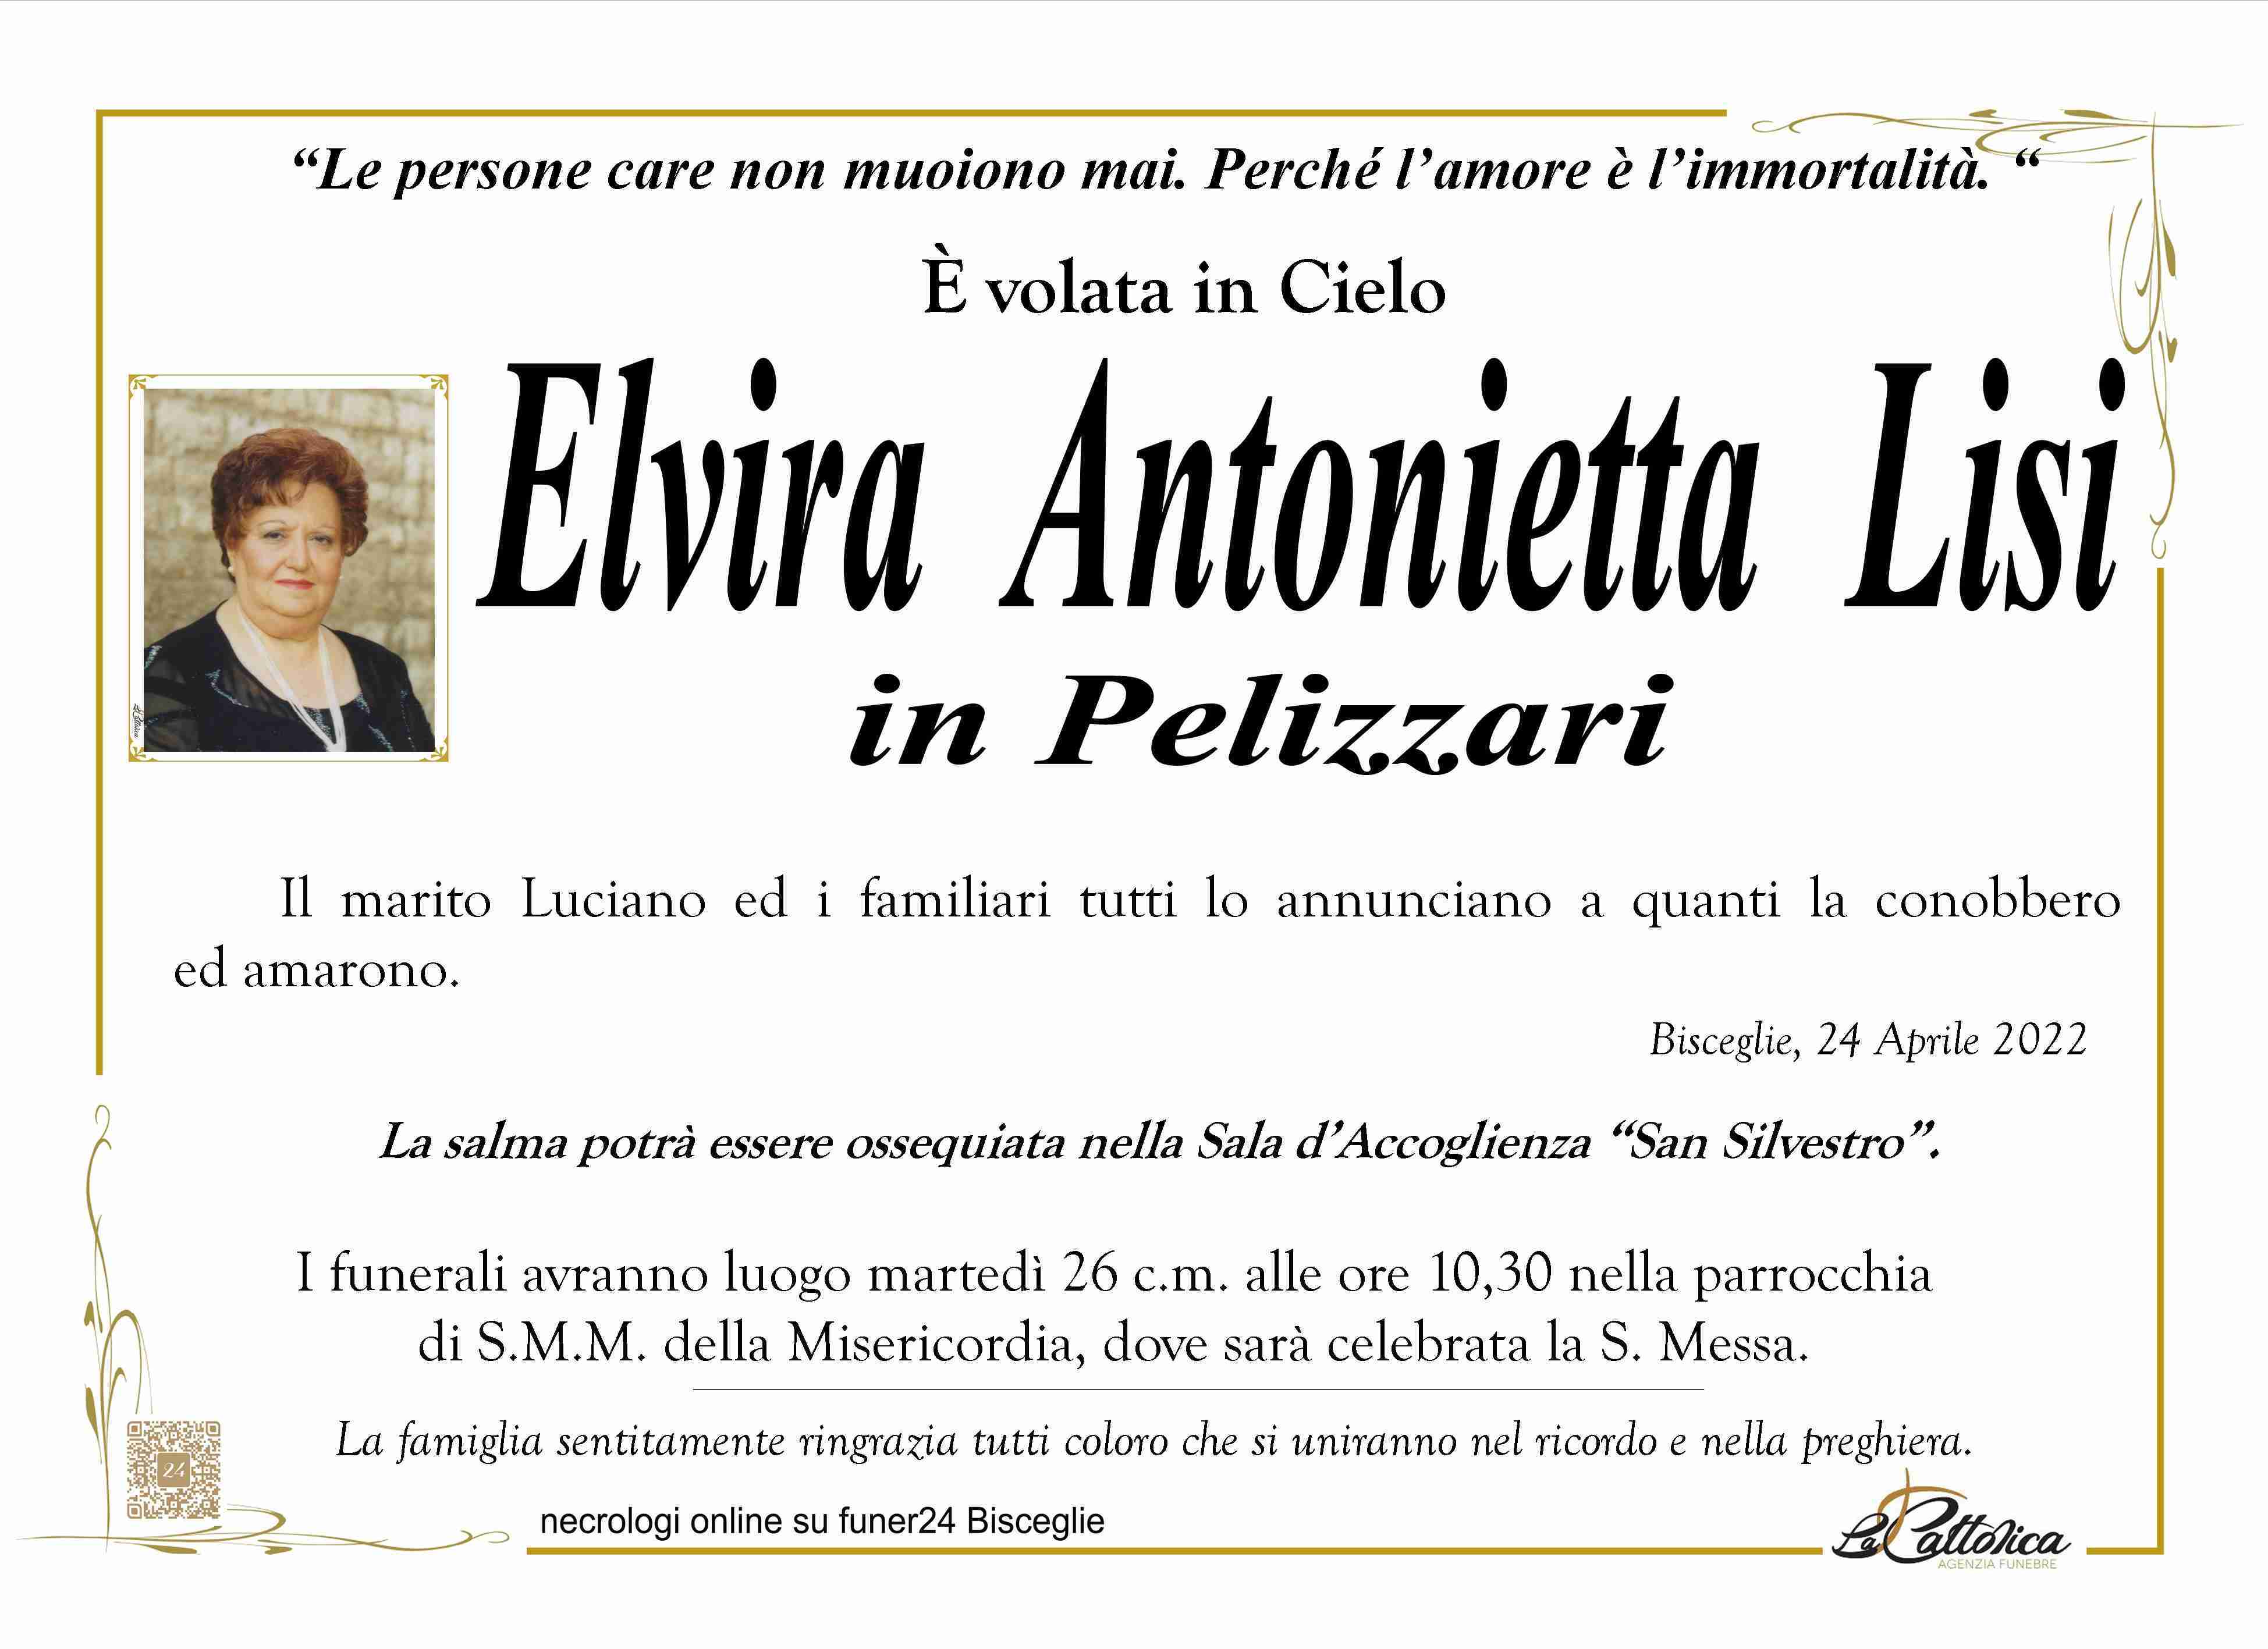 Elvira Antonietta Lisi